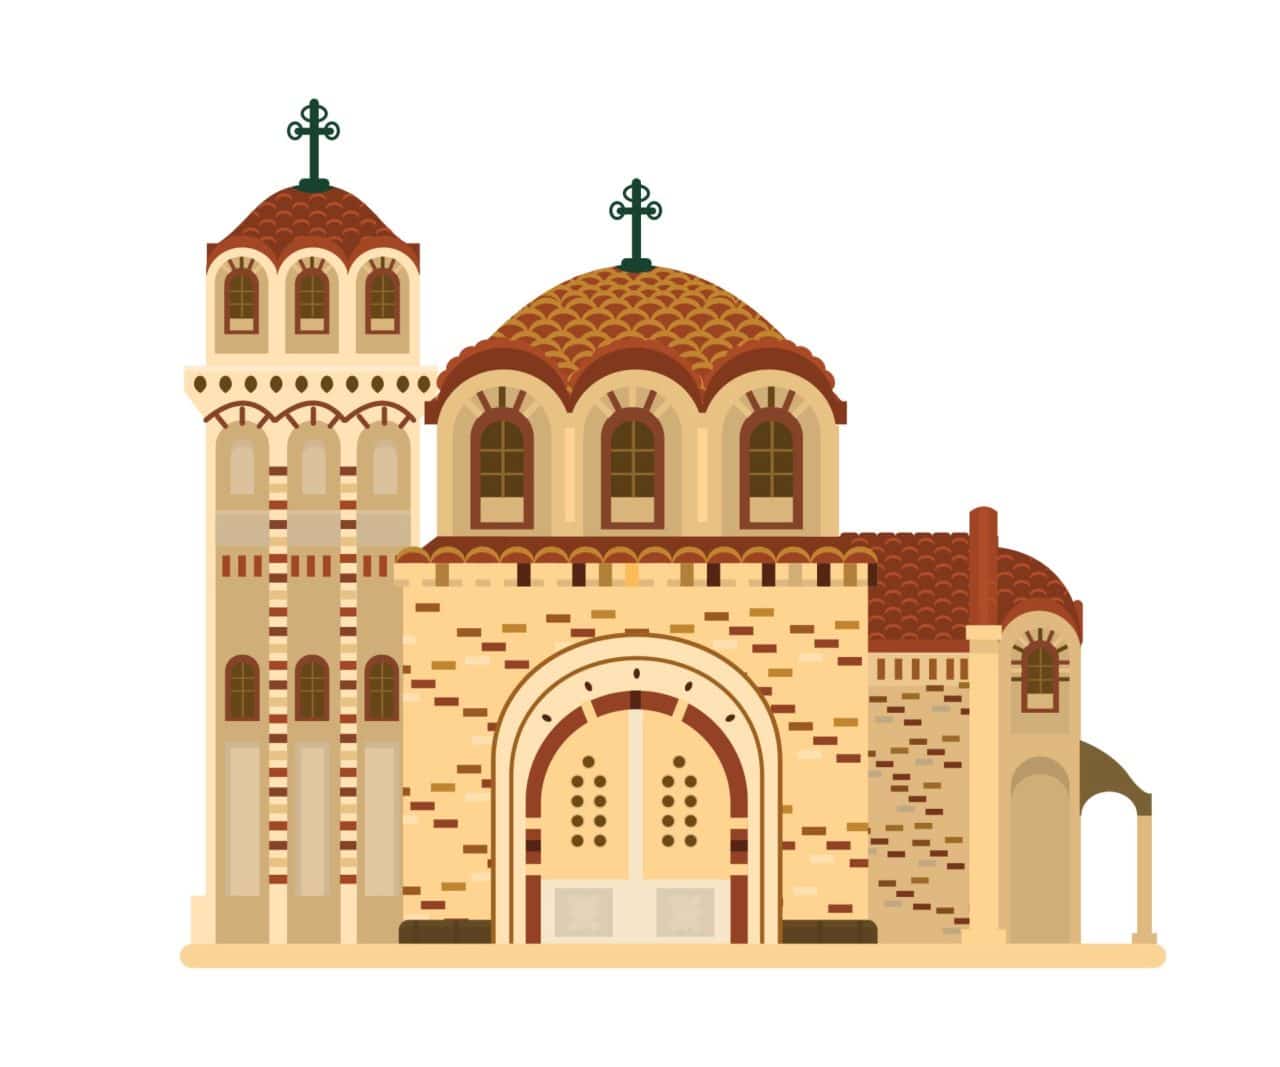 Parrocchia Ortodossa Slavofona dei Santi Progenitori Gioacchino e Anna – Verona